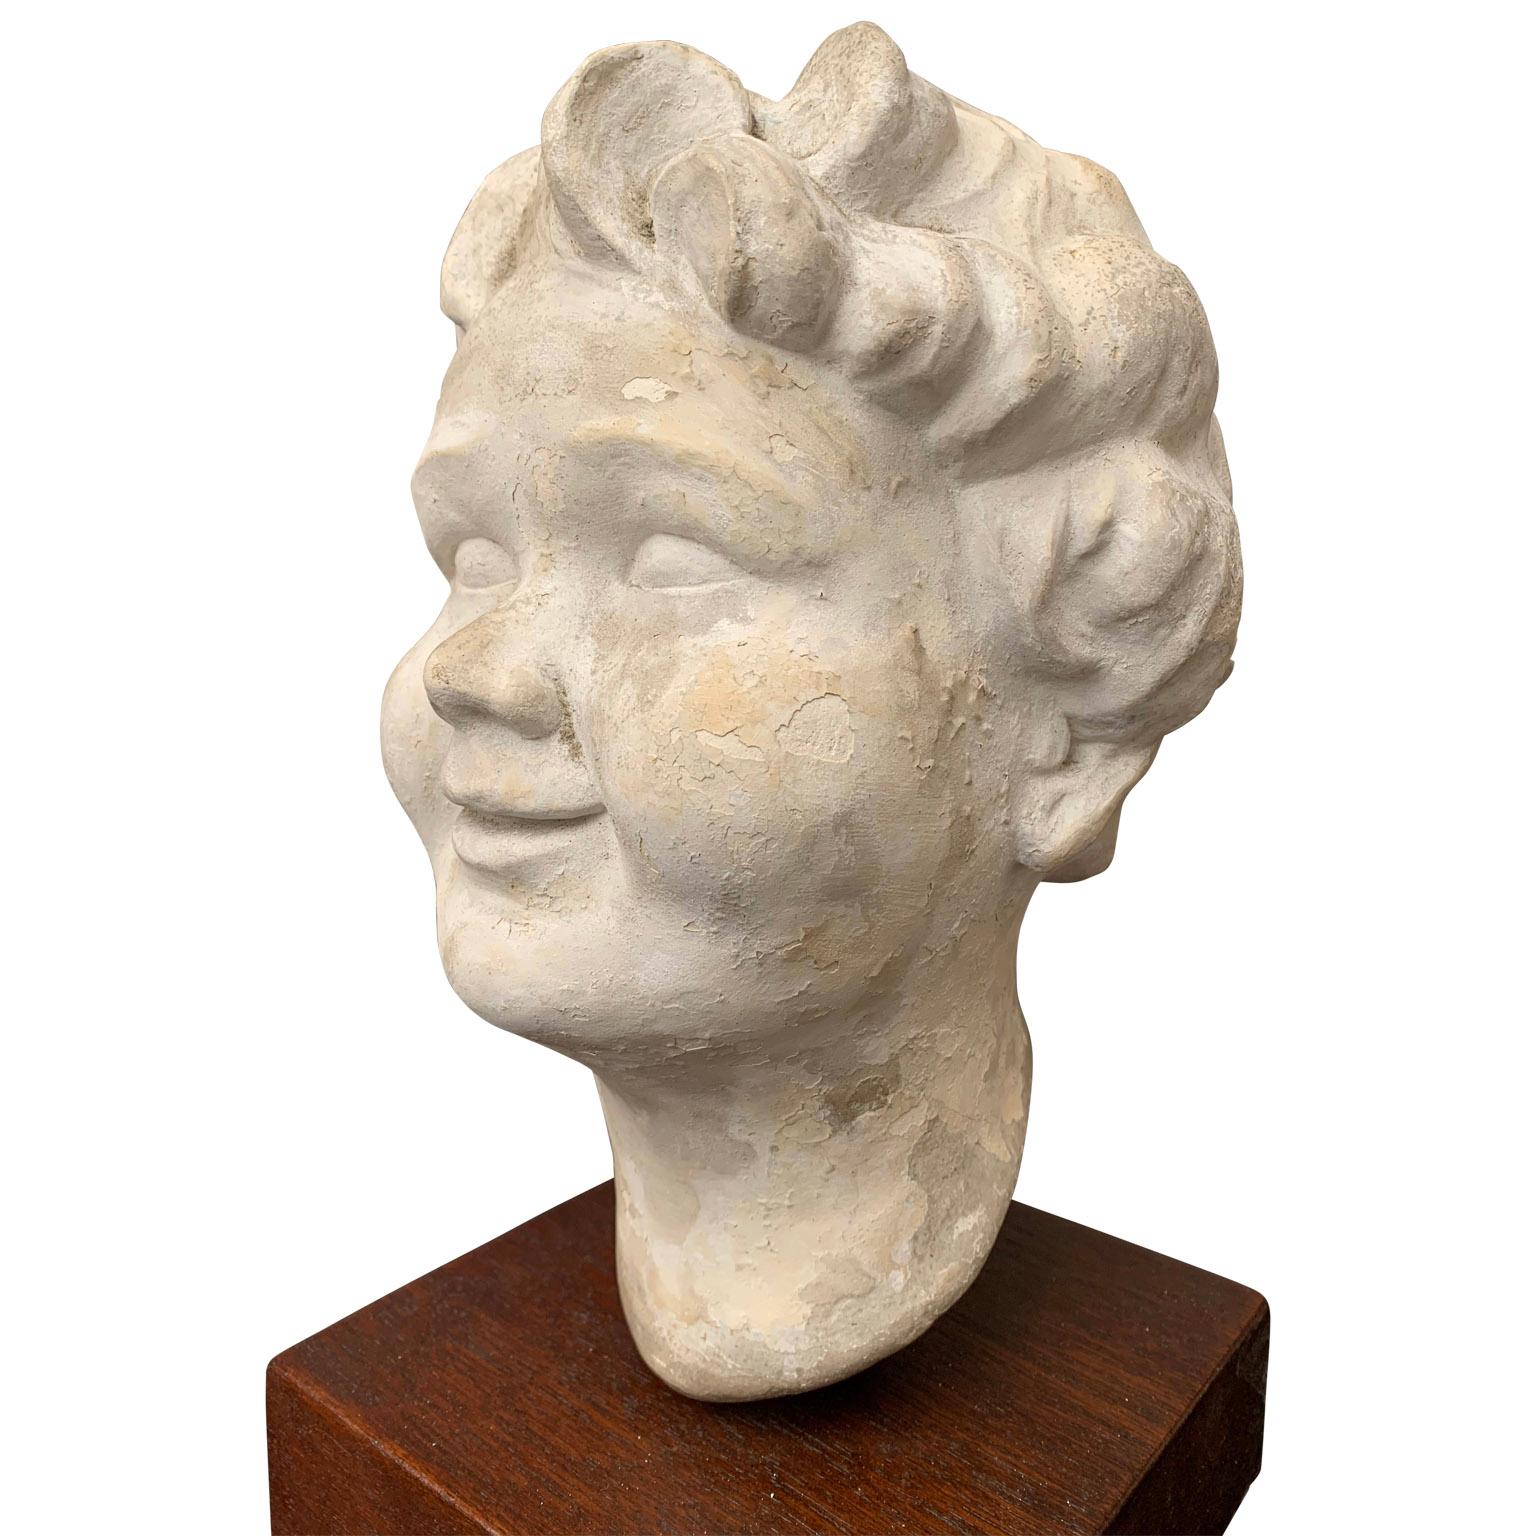 Sculpture en plâtre d'une tête de putti ou d'enfant sur support en bois

La sculpture est datée dans le plâtre avec 